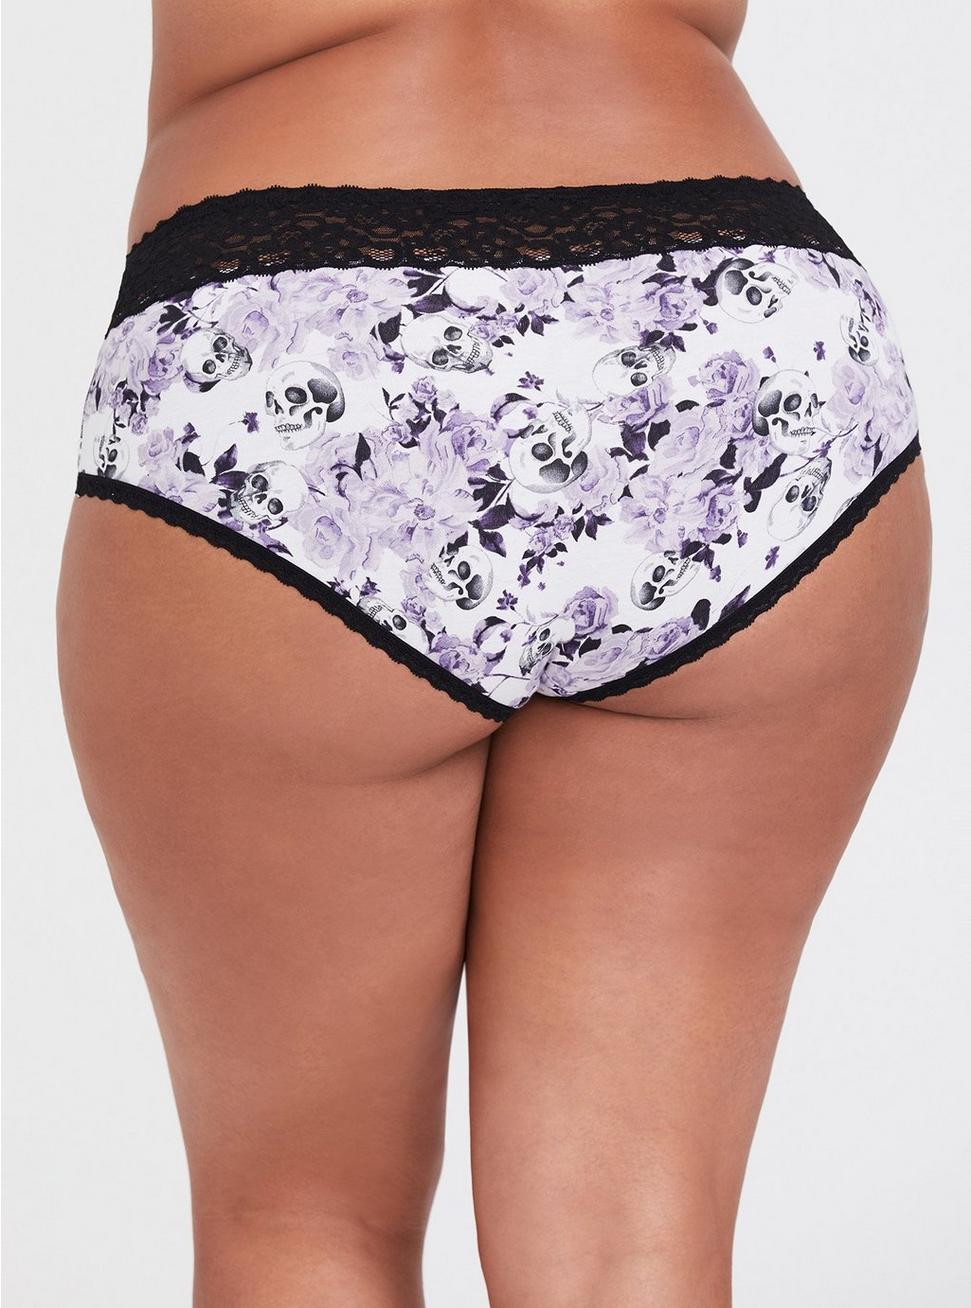 Torrid Cheeky Panties Underwear Floral Wide Lace Skulls Plus Size 1 14 / 16